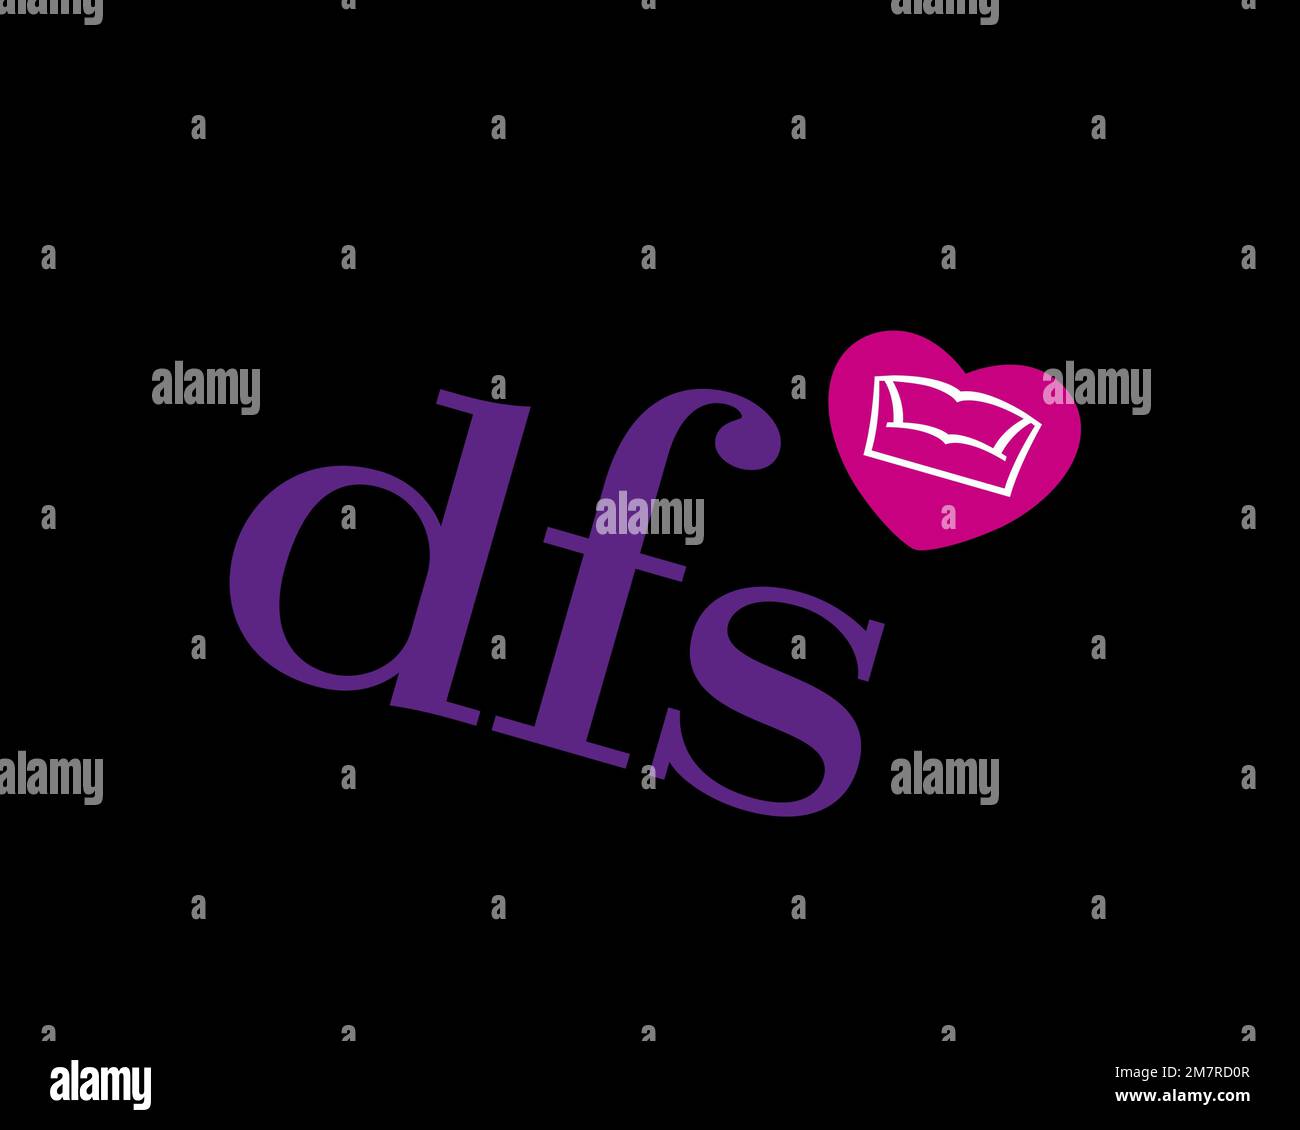 dfs furniture logo